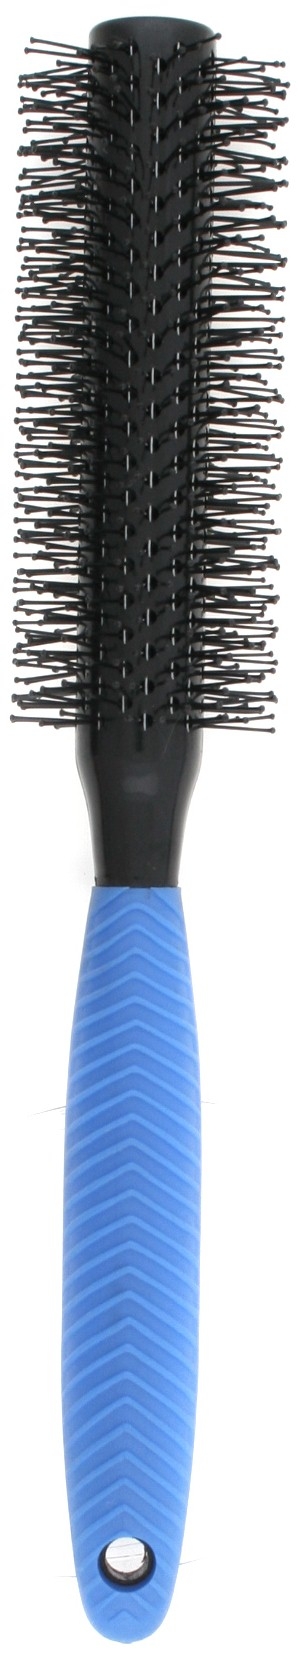  Plastic Bristle Round Brush, 38mm